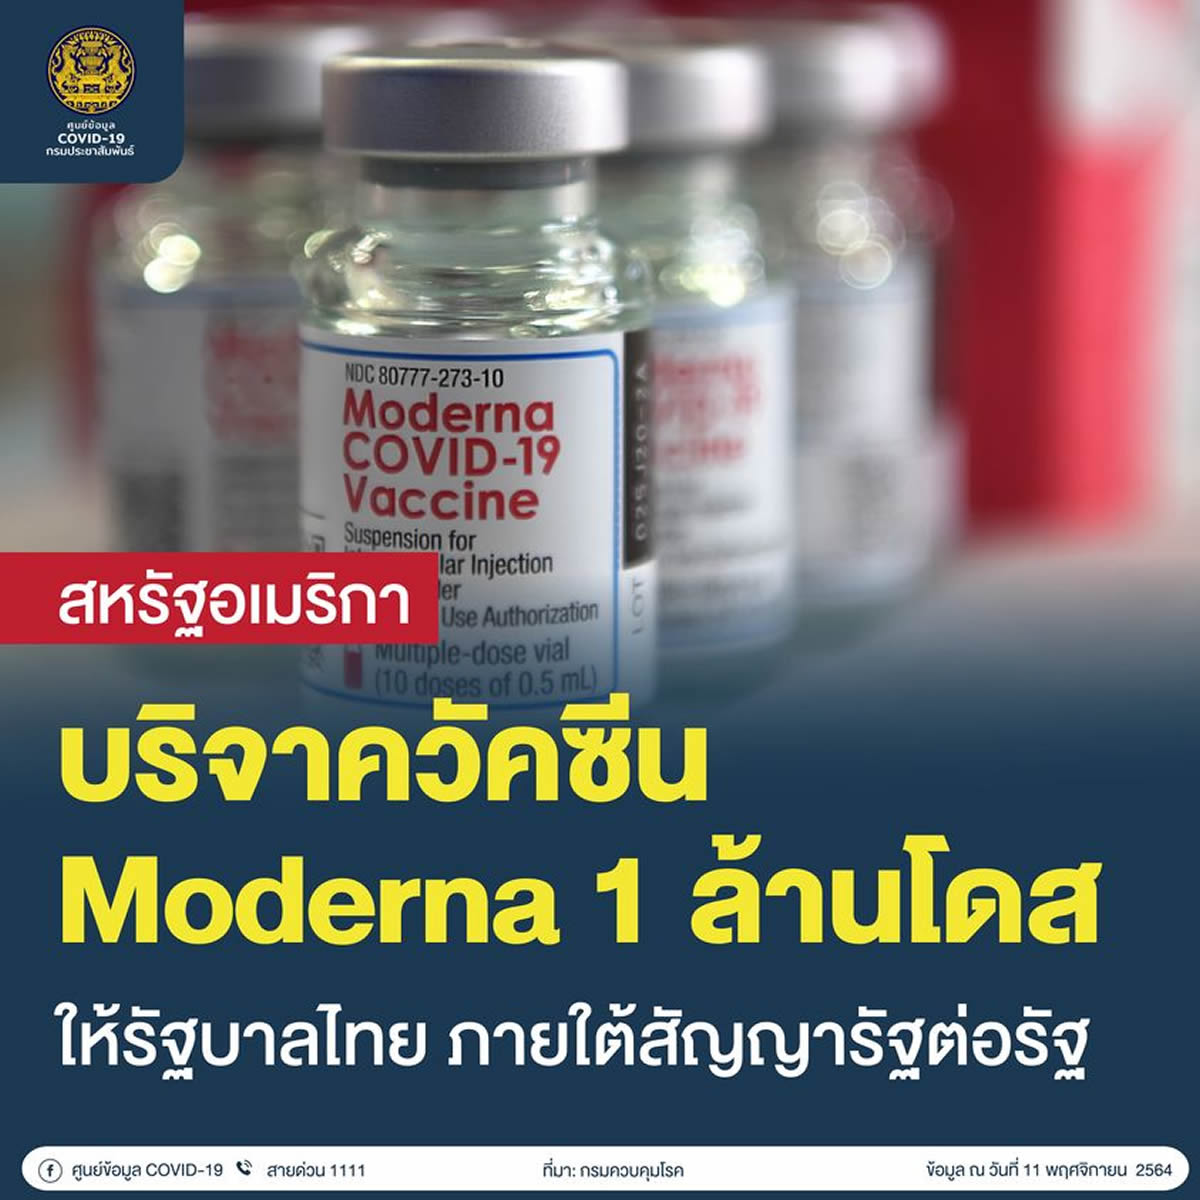 アメリカがタイにモデルナ製ワクチン100万回分を寄贈へ